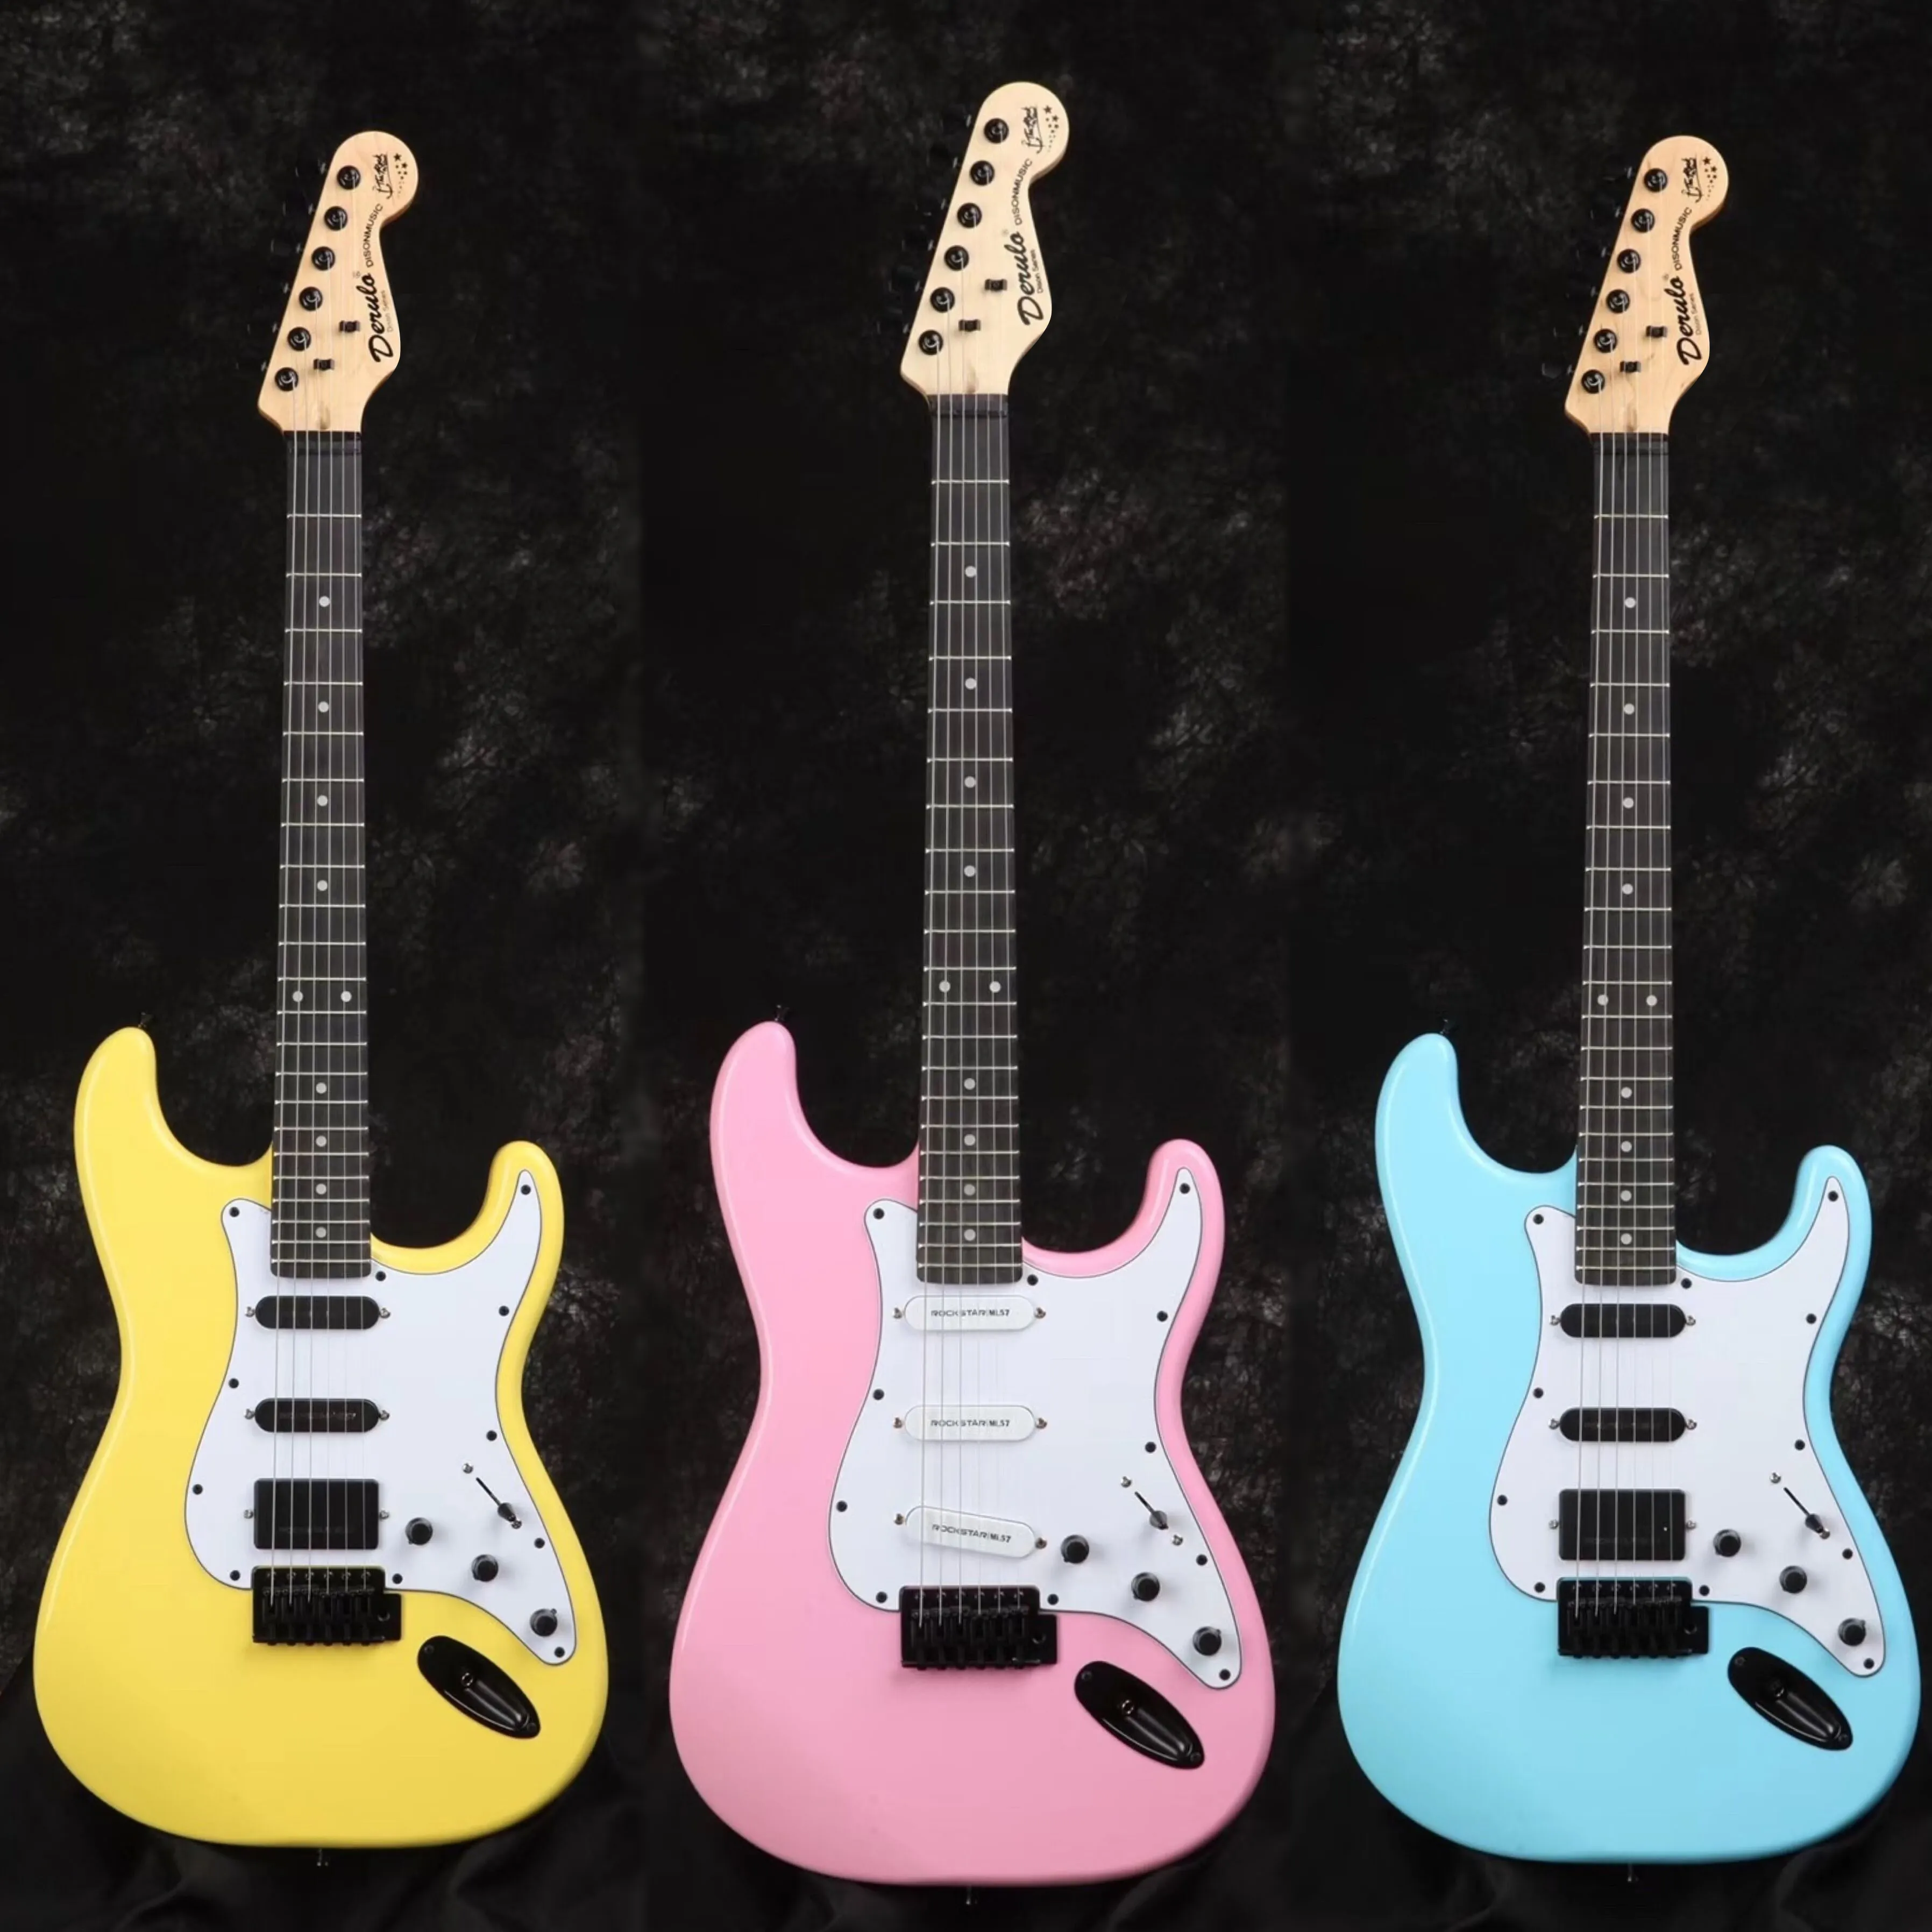 Derulo guitarra eléctrica de alta calidad 6 cuerdas tipo ST precio barato ed amarillo rosa azul negro blanco múltiples colores precio de fábrica